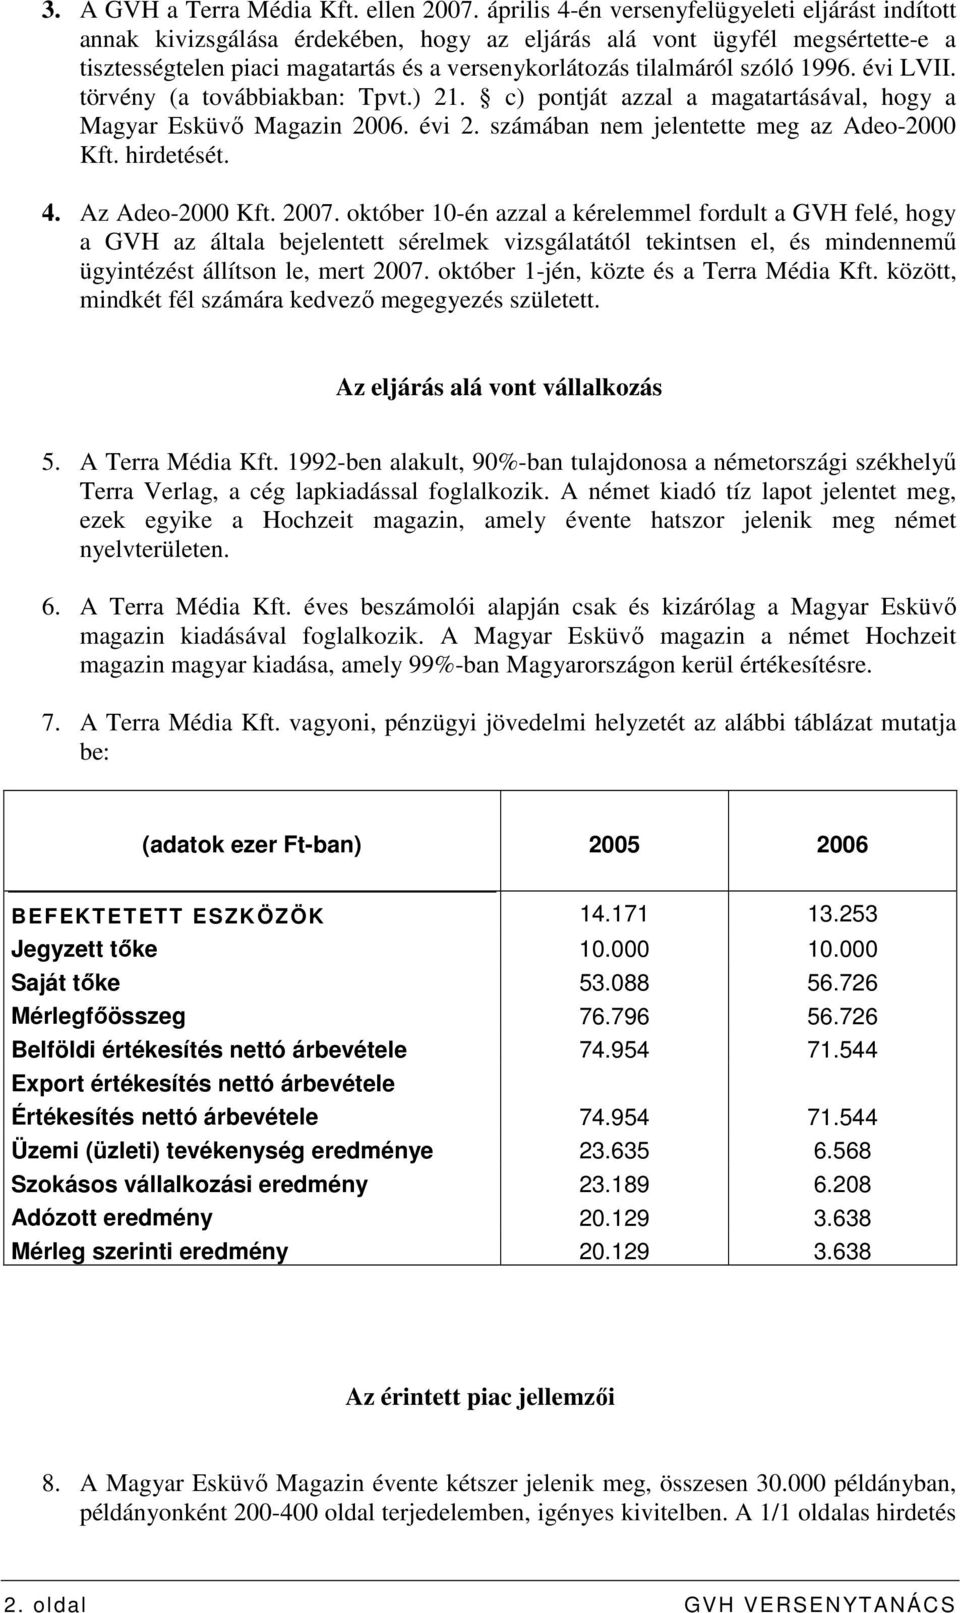 szóló 1996. évi LVII. törvény (a továbbiakban: Tpvt.) 21. c) pontját azzal a magatartásával, hogy a Magyar Esküvı Magazin 2006. évi 2. számában nem jelentette meg az Adeo-2000 Kft. hirdetését. 4.